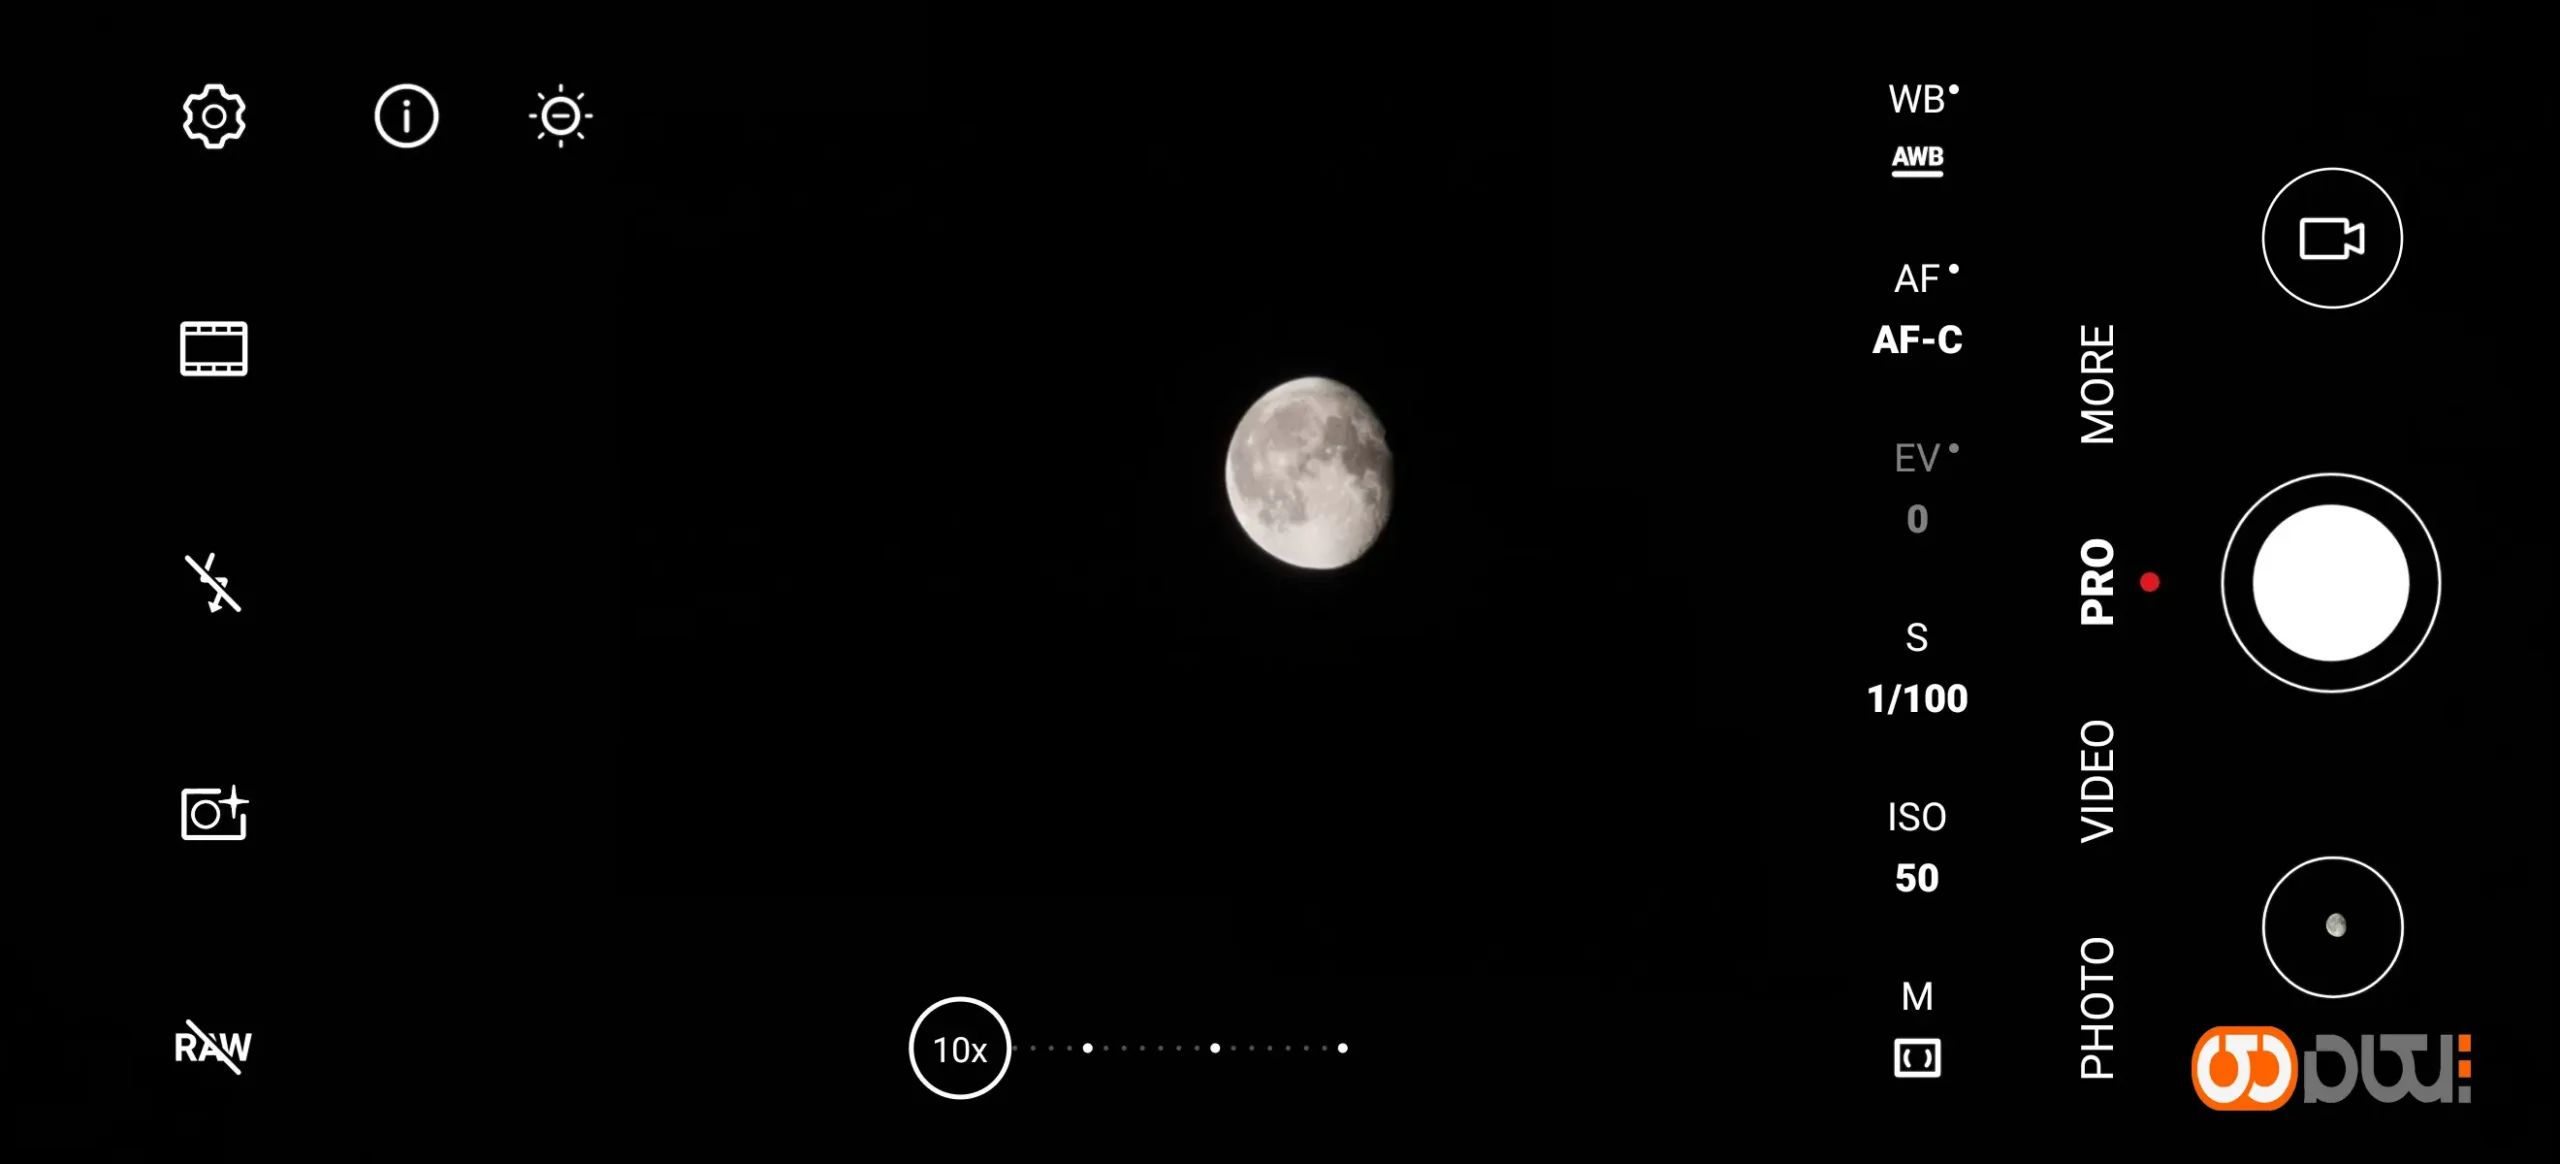 قابلیت عکاسی از ماه سامسونگ با هوش مصنوعی